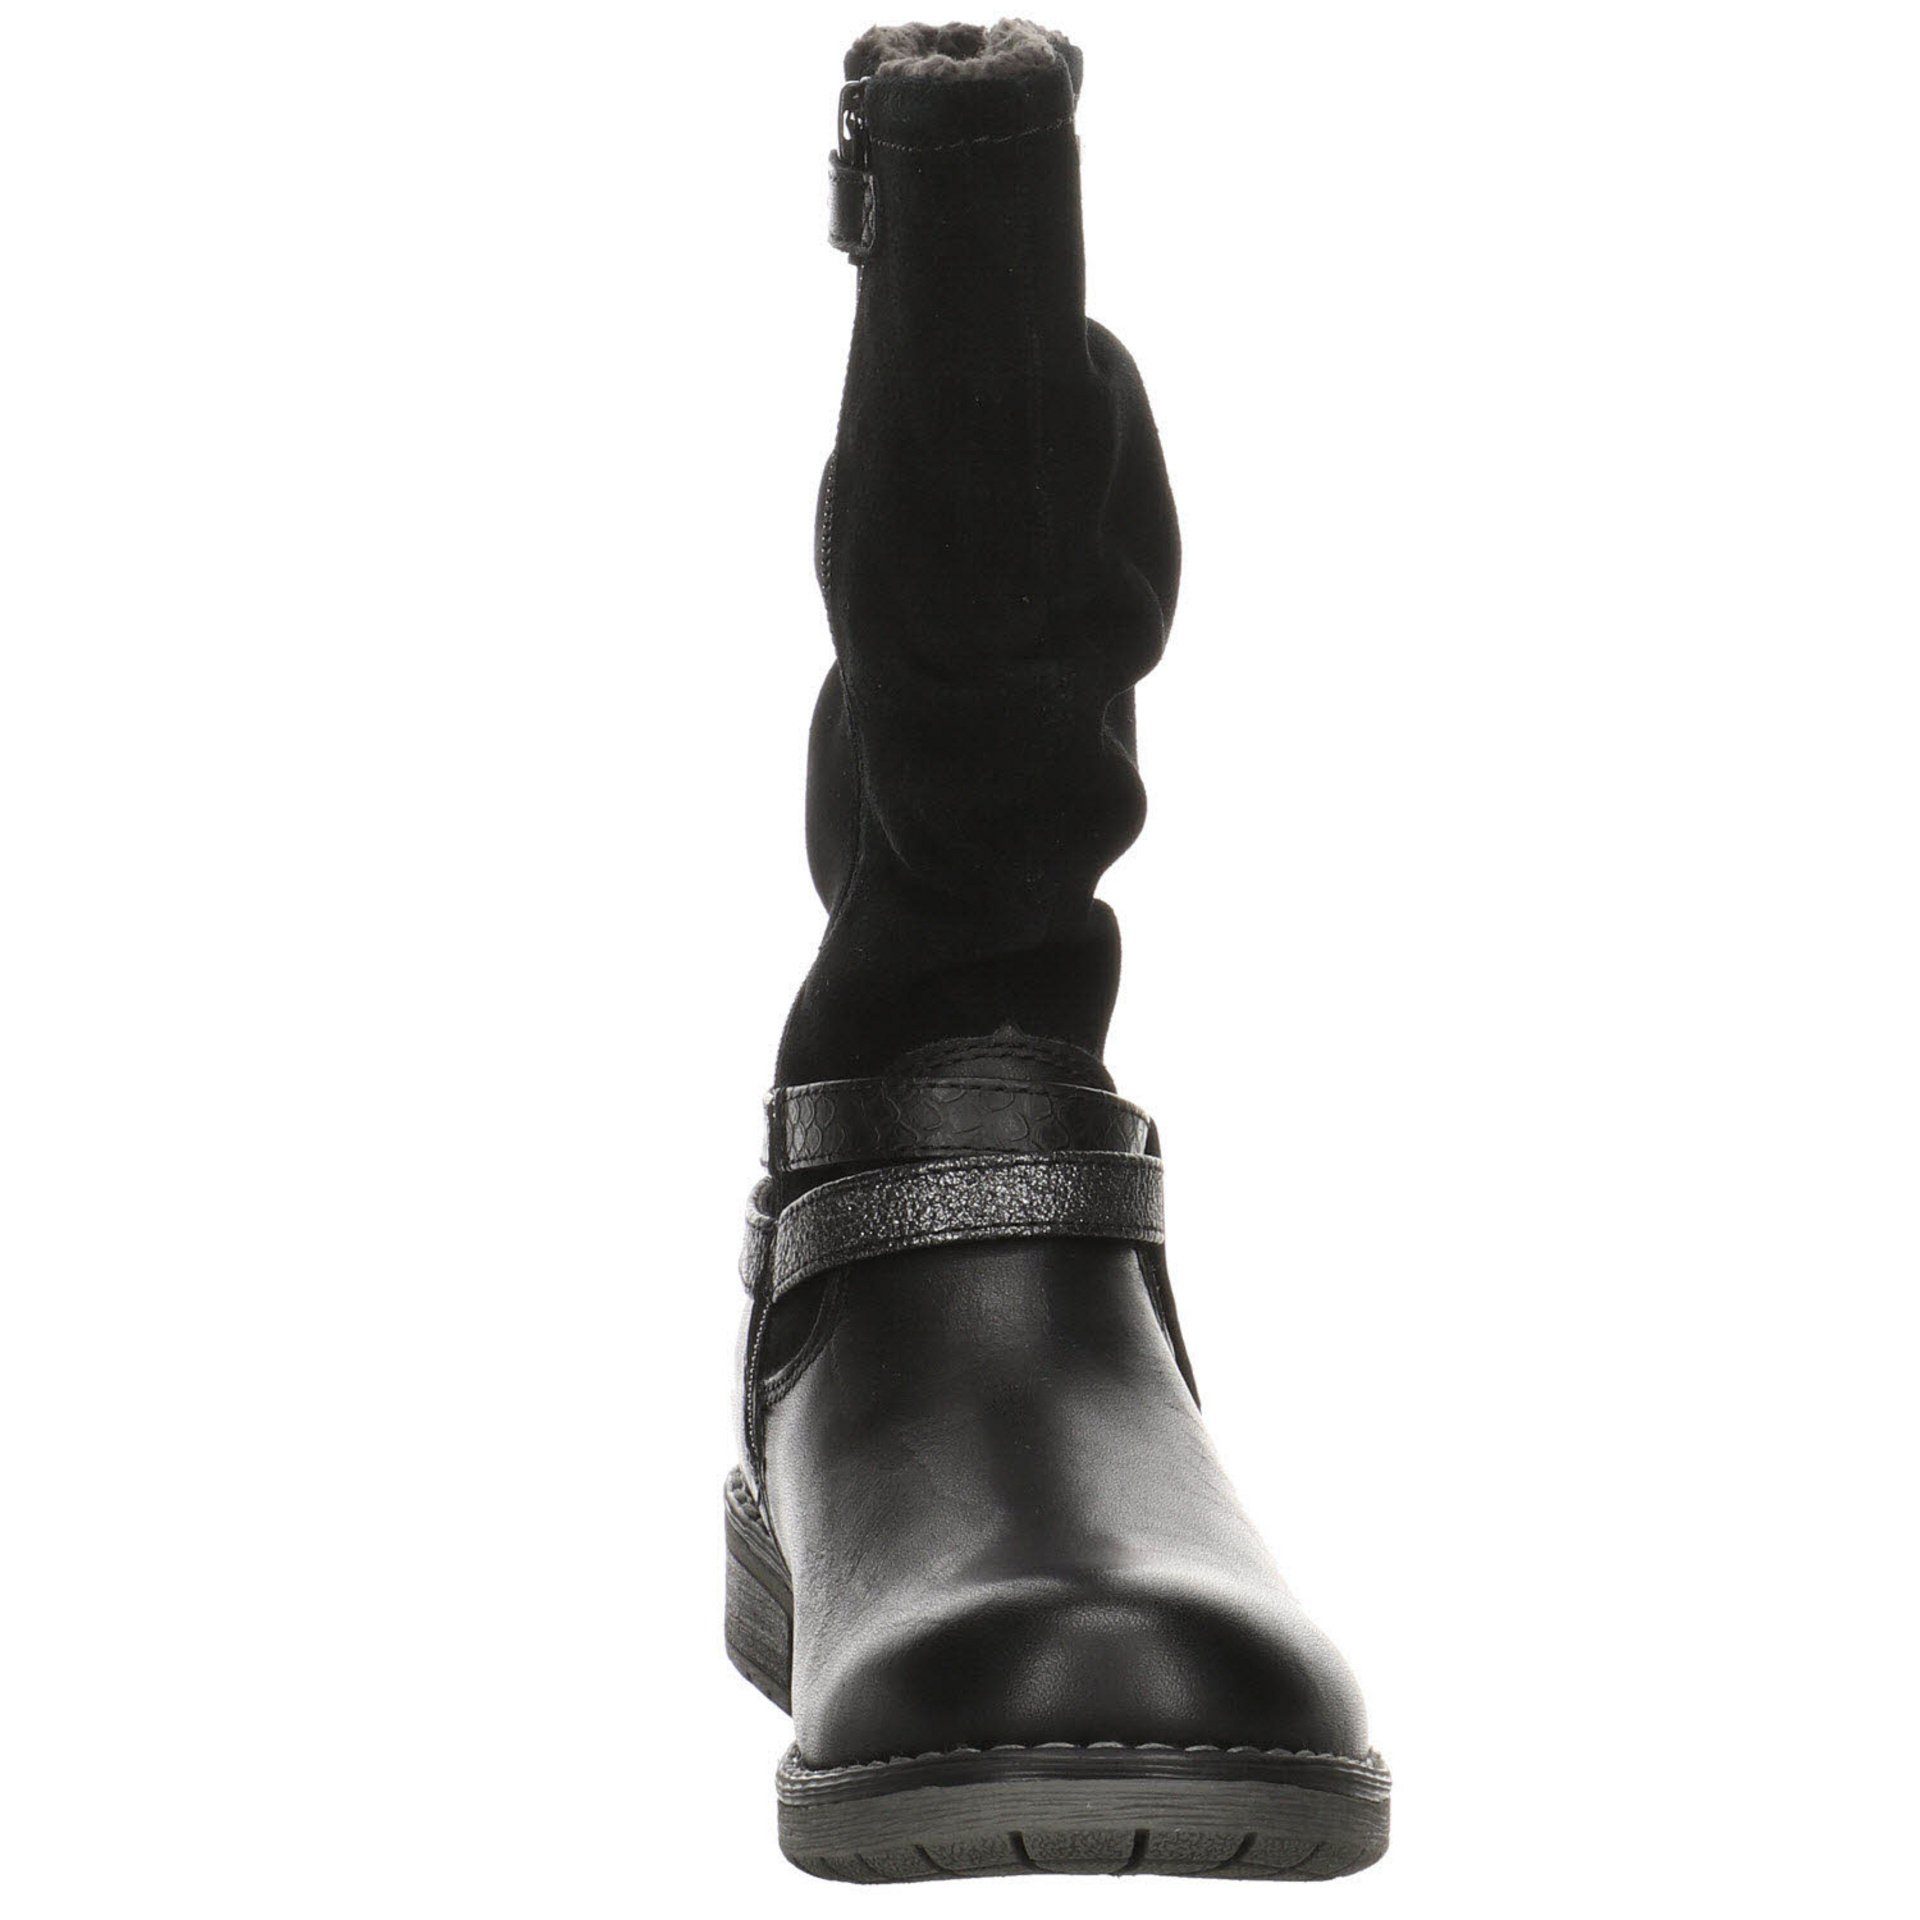 Mädchen Stiefel Stiefelette Black Lia-TEX Lurchi Stiefel Lederkombination Schuhe Nappa